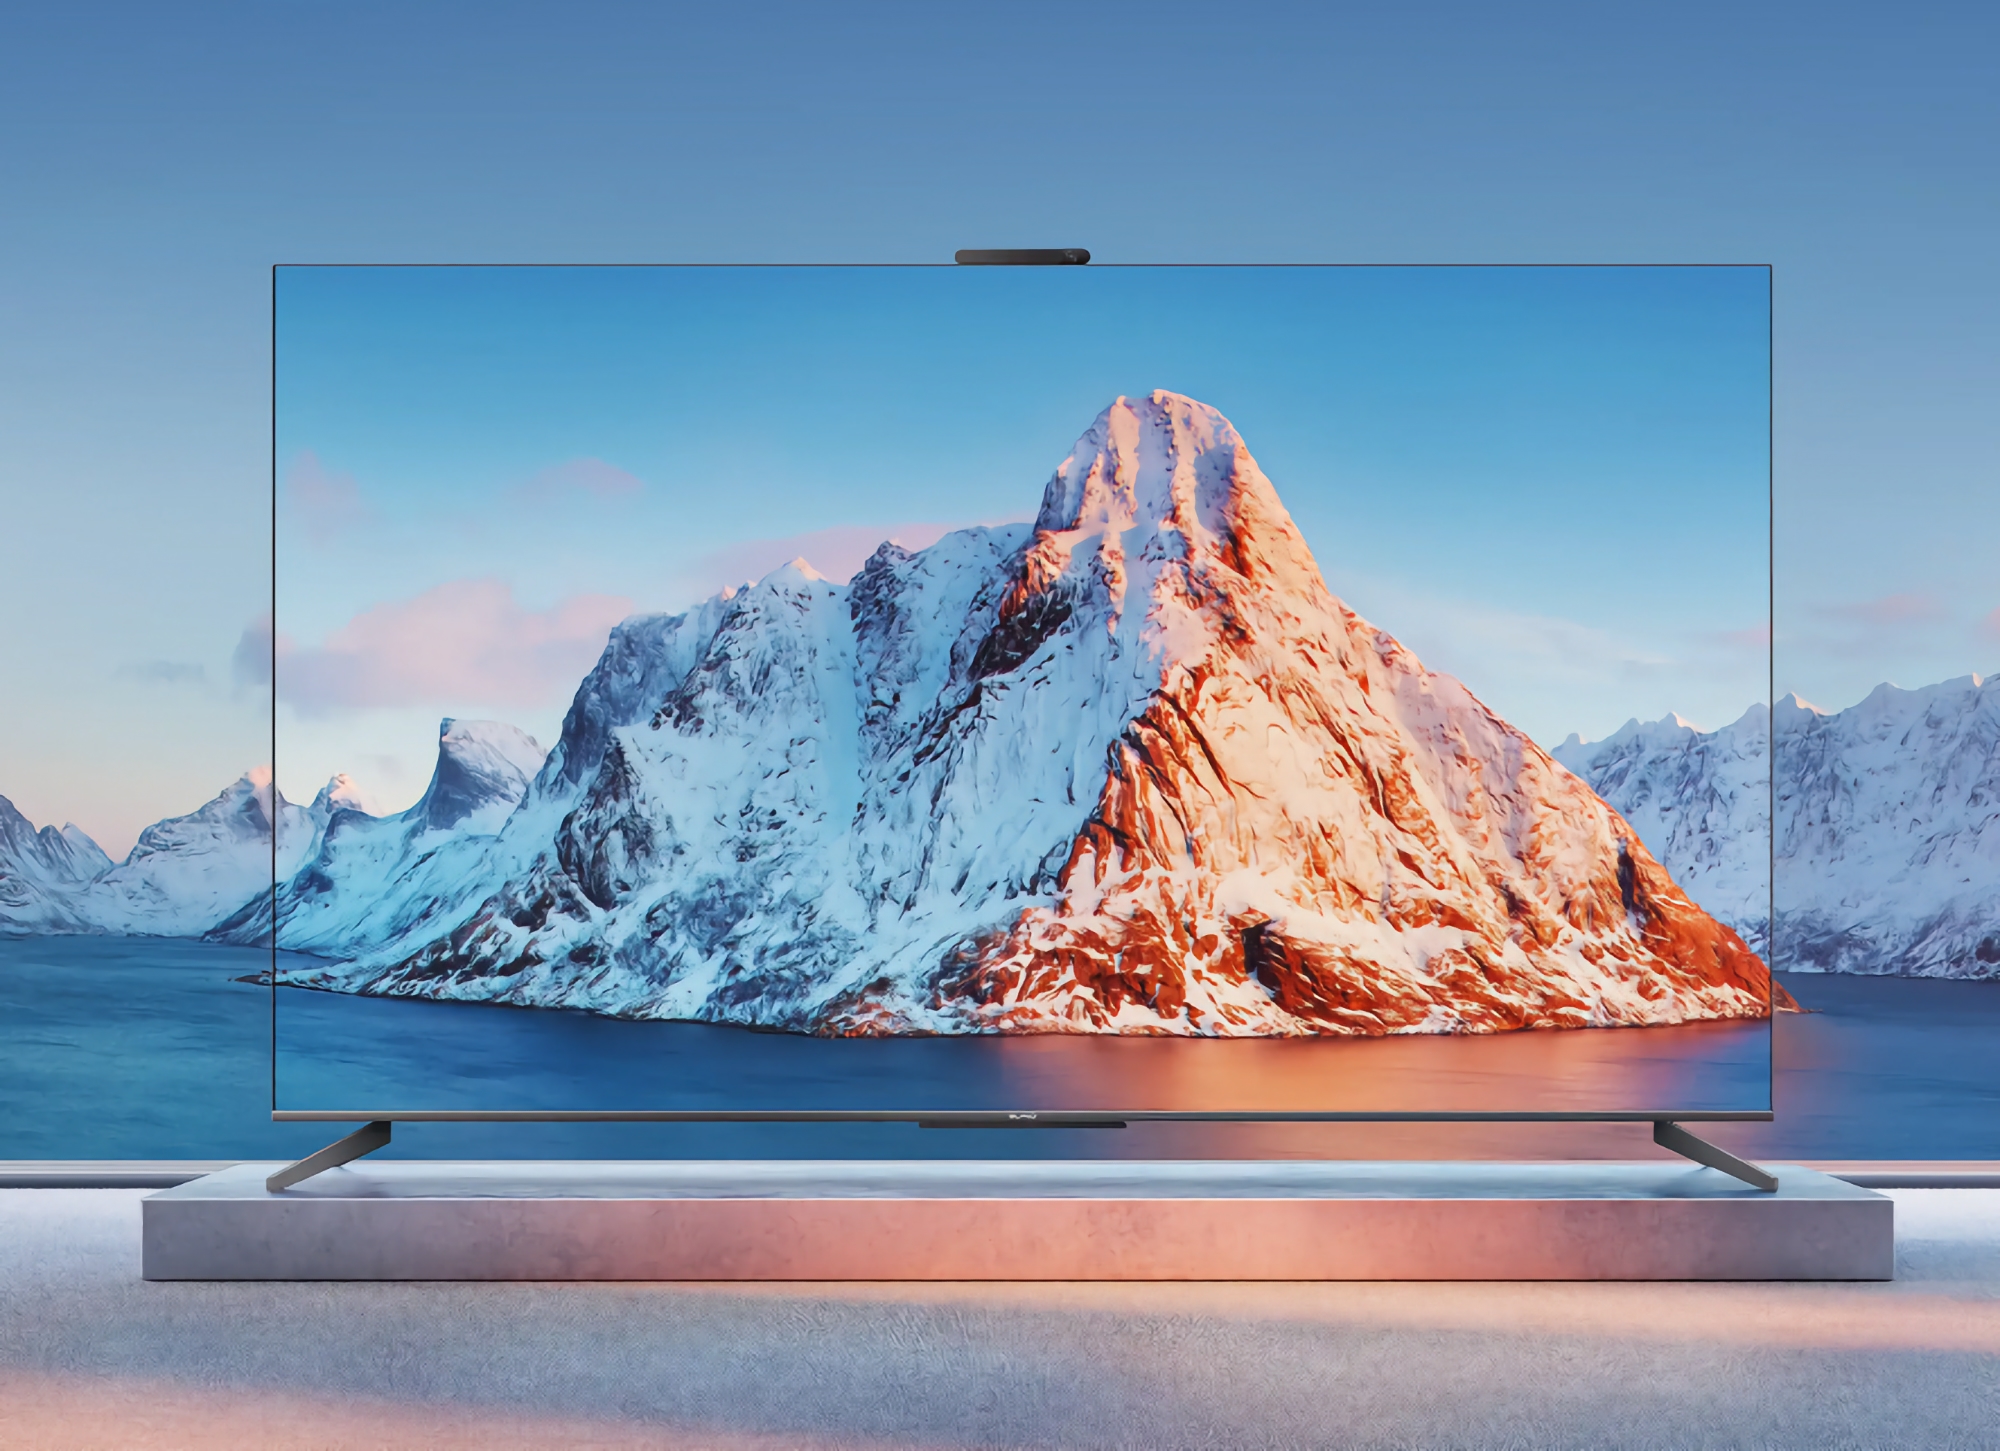 Huawei prepara el televisor Smart Screen S3 Pro con pantalla de 86 pulgadas